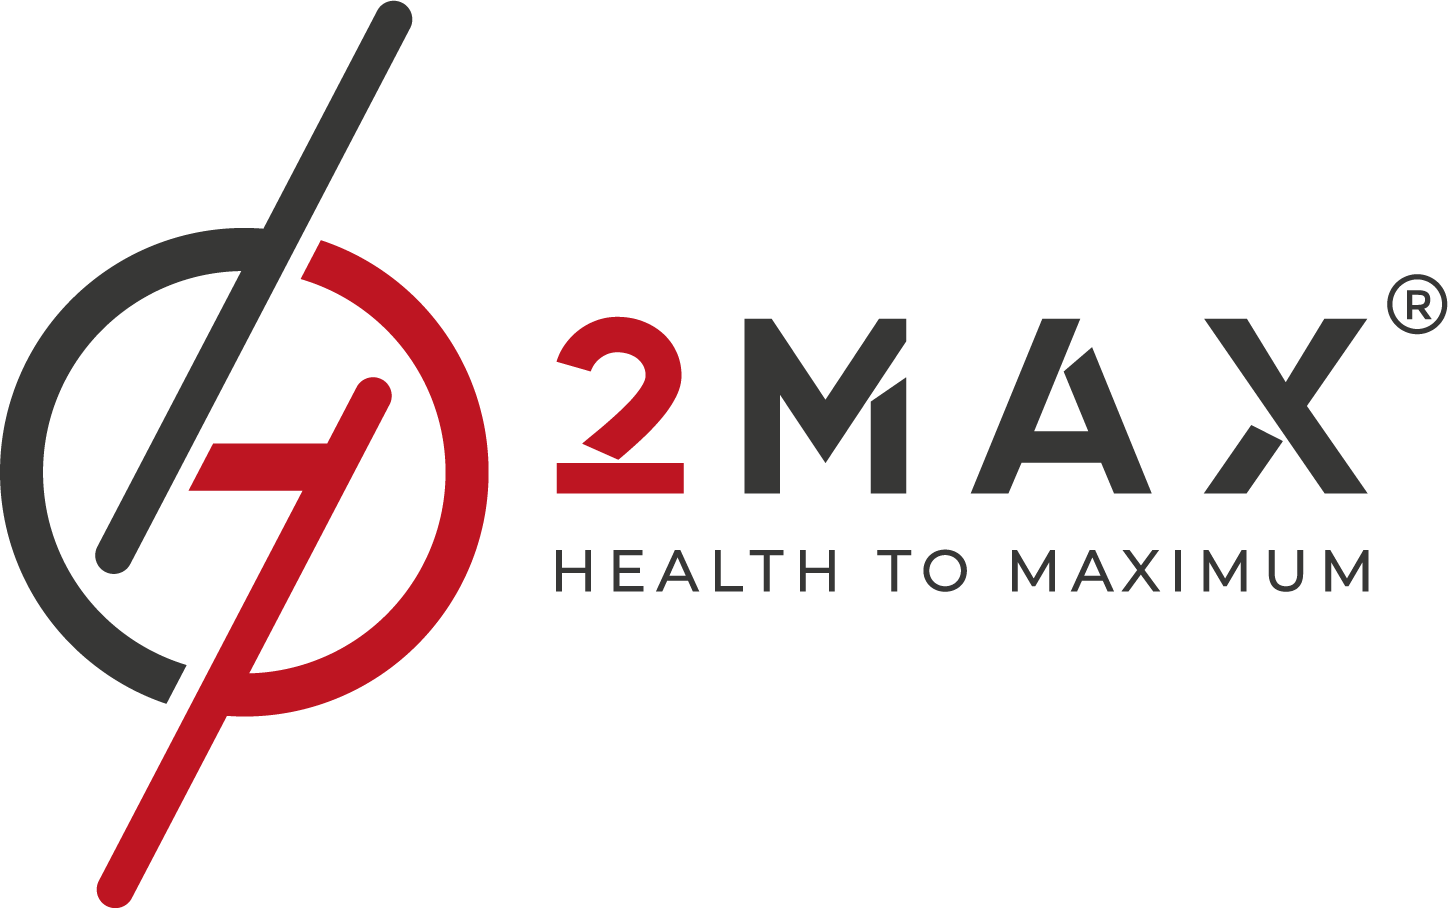 H2MAX - Health to Maximum